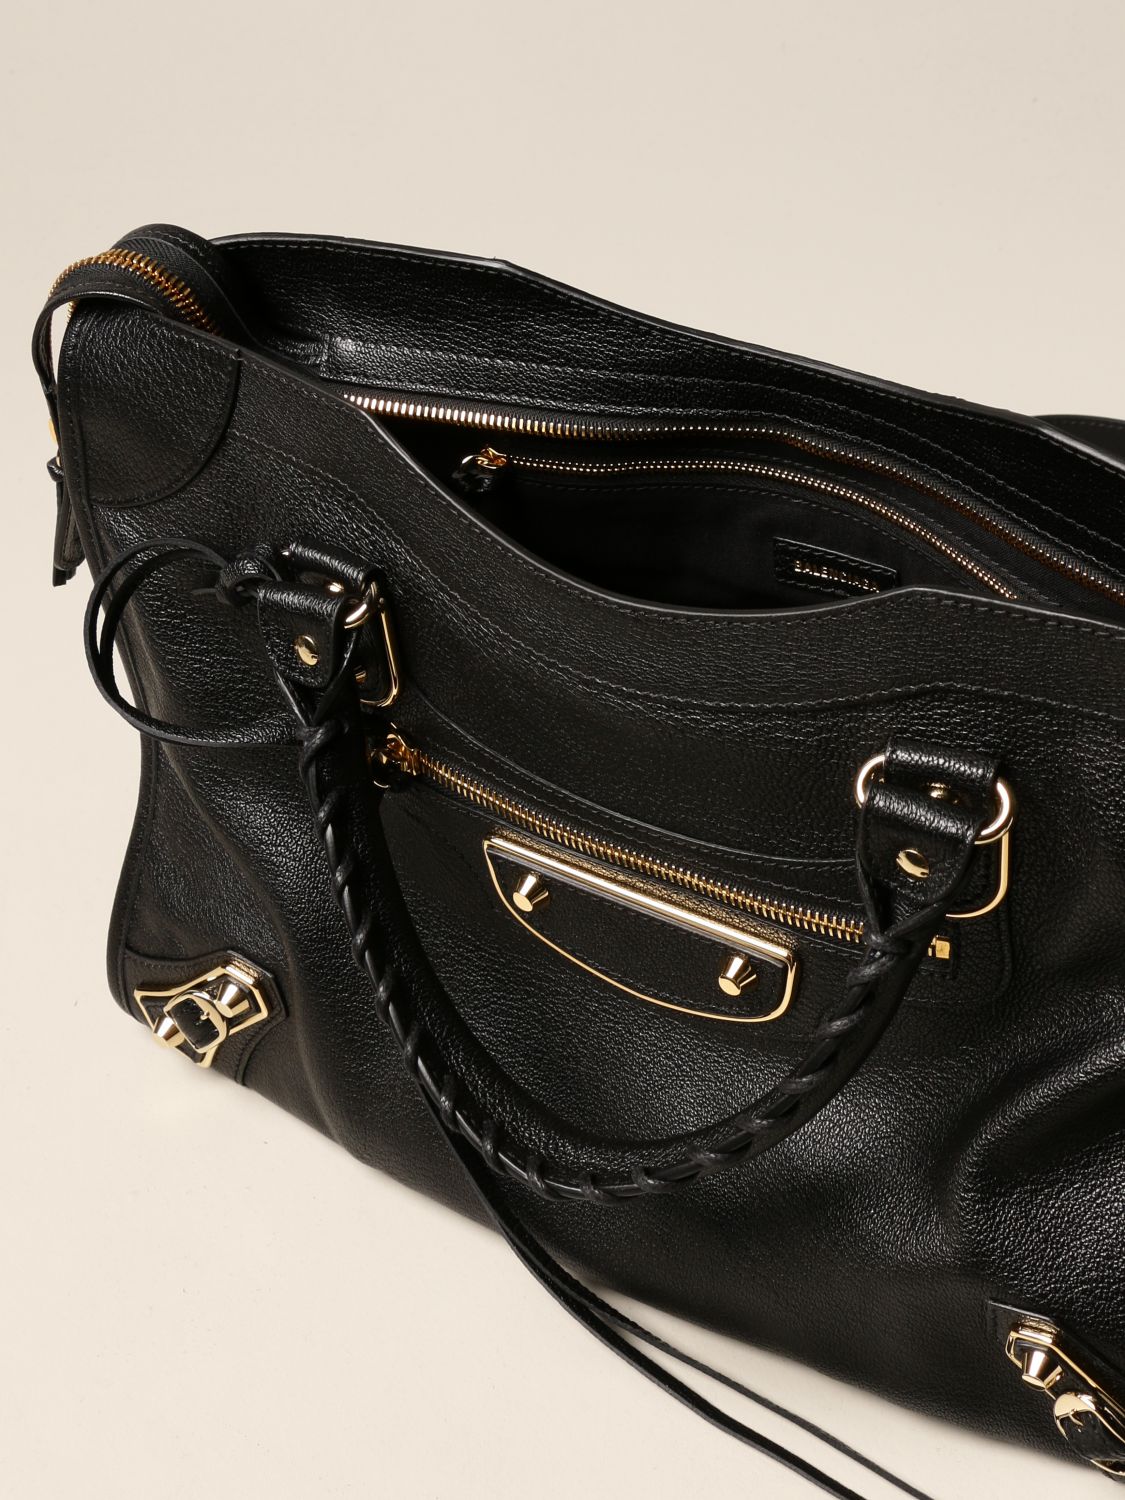 City Balenciaga leather bag